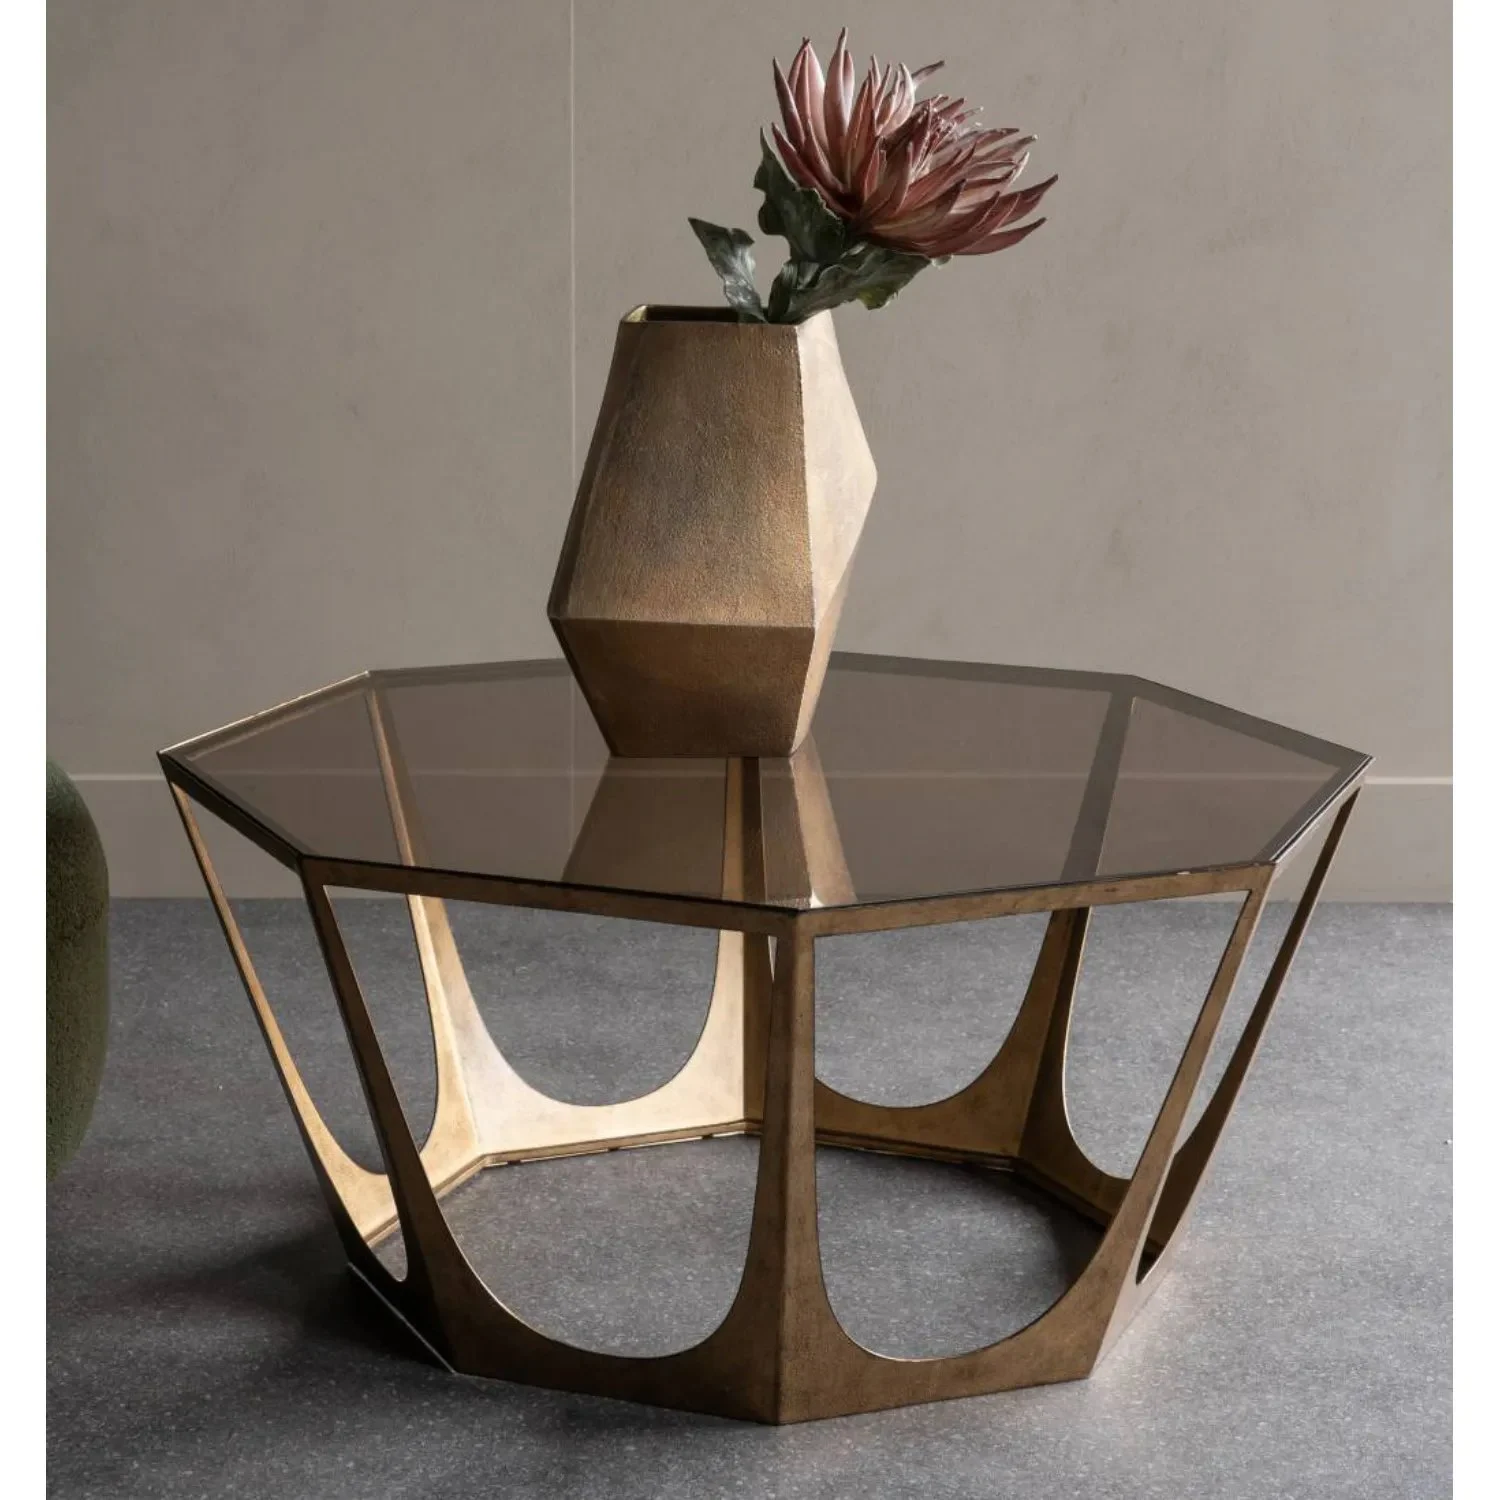 Chân bàn tạo hình nghệ thuật bằng kim loại